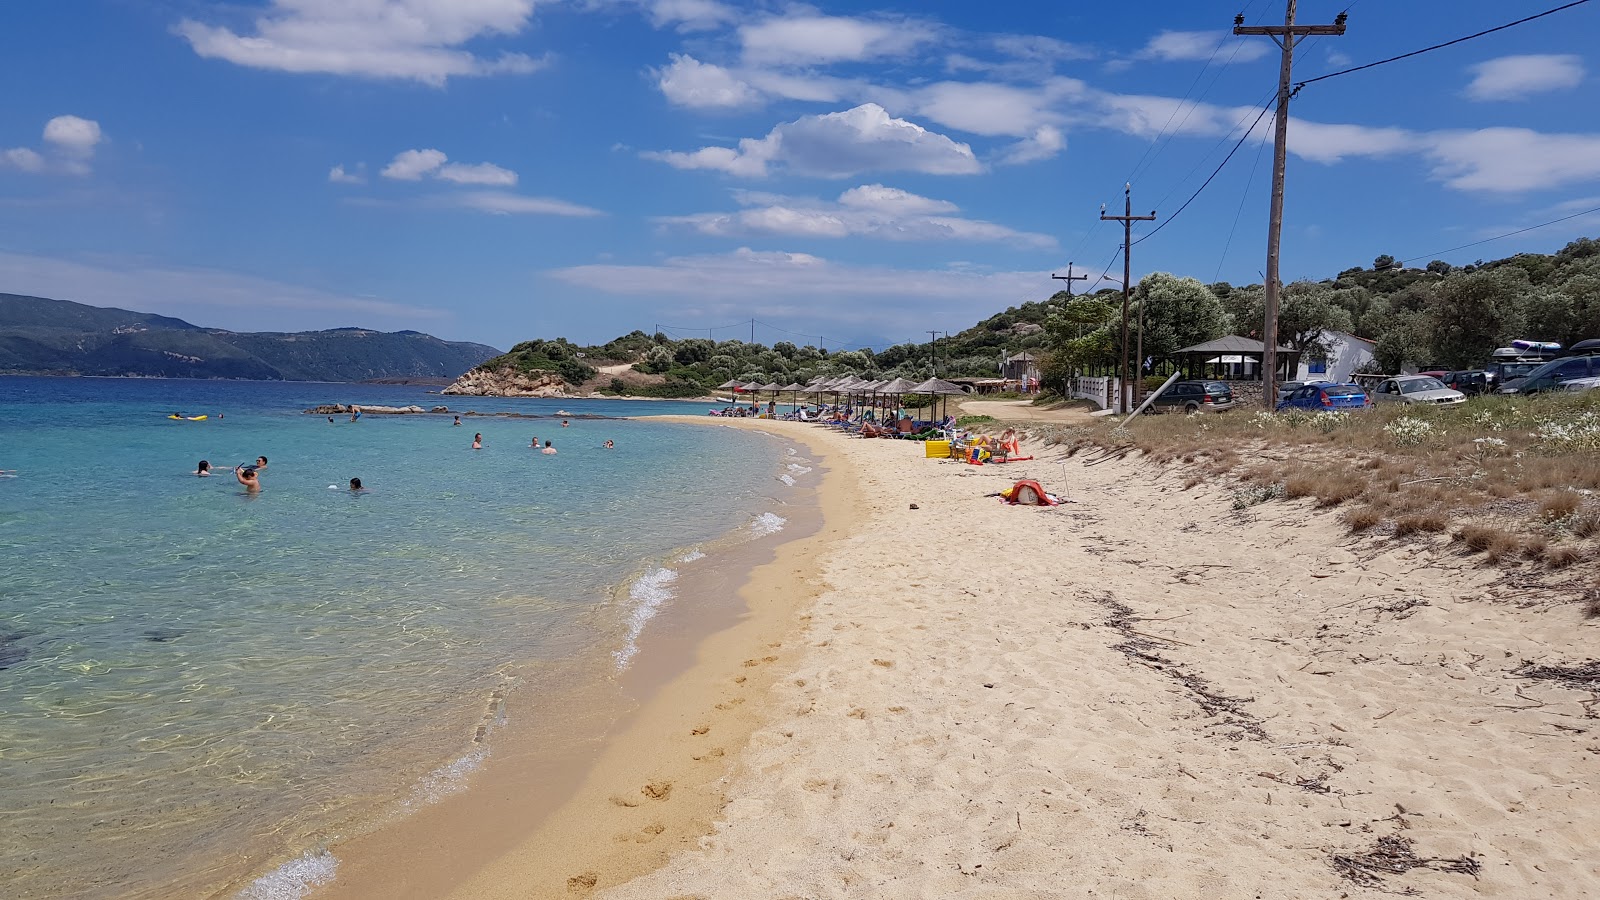 Agios Georgios Plajı'in fotoğrafı geniş ile birlikte